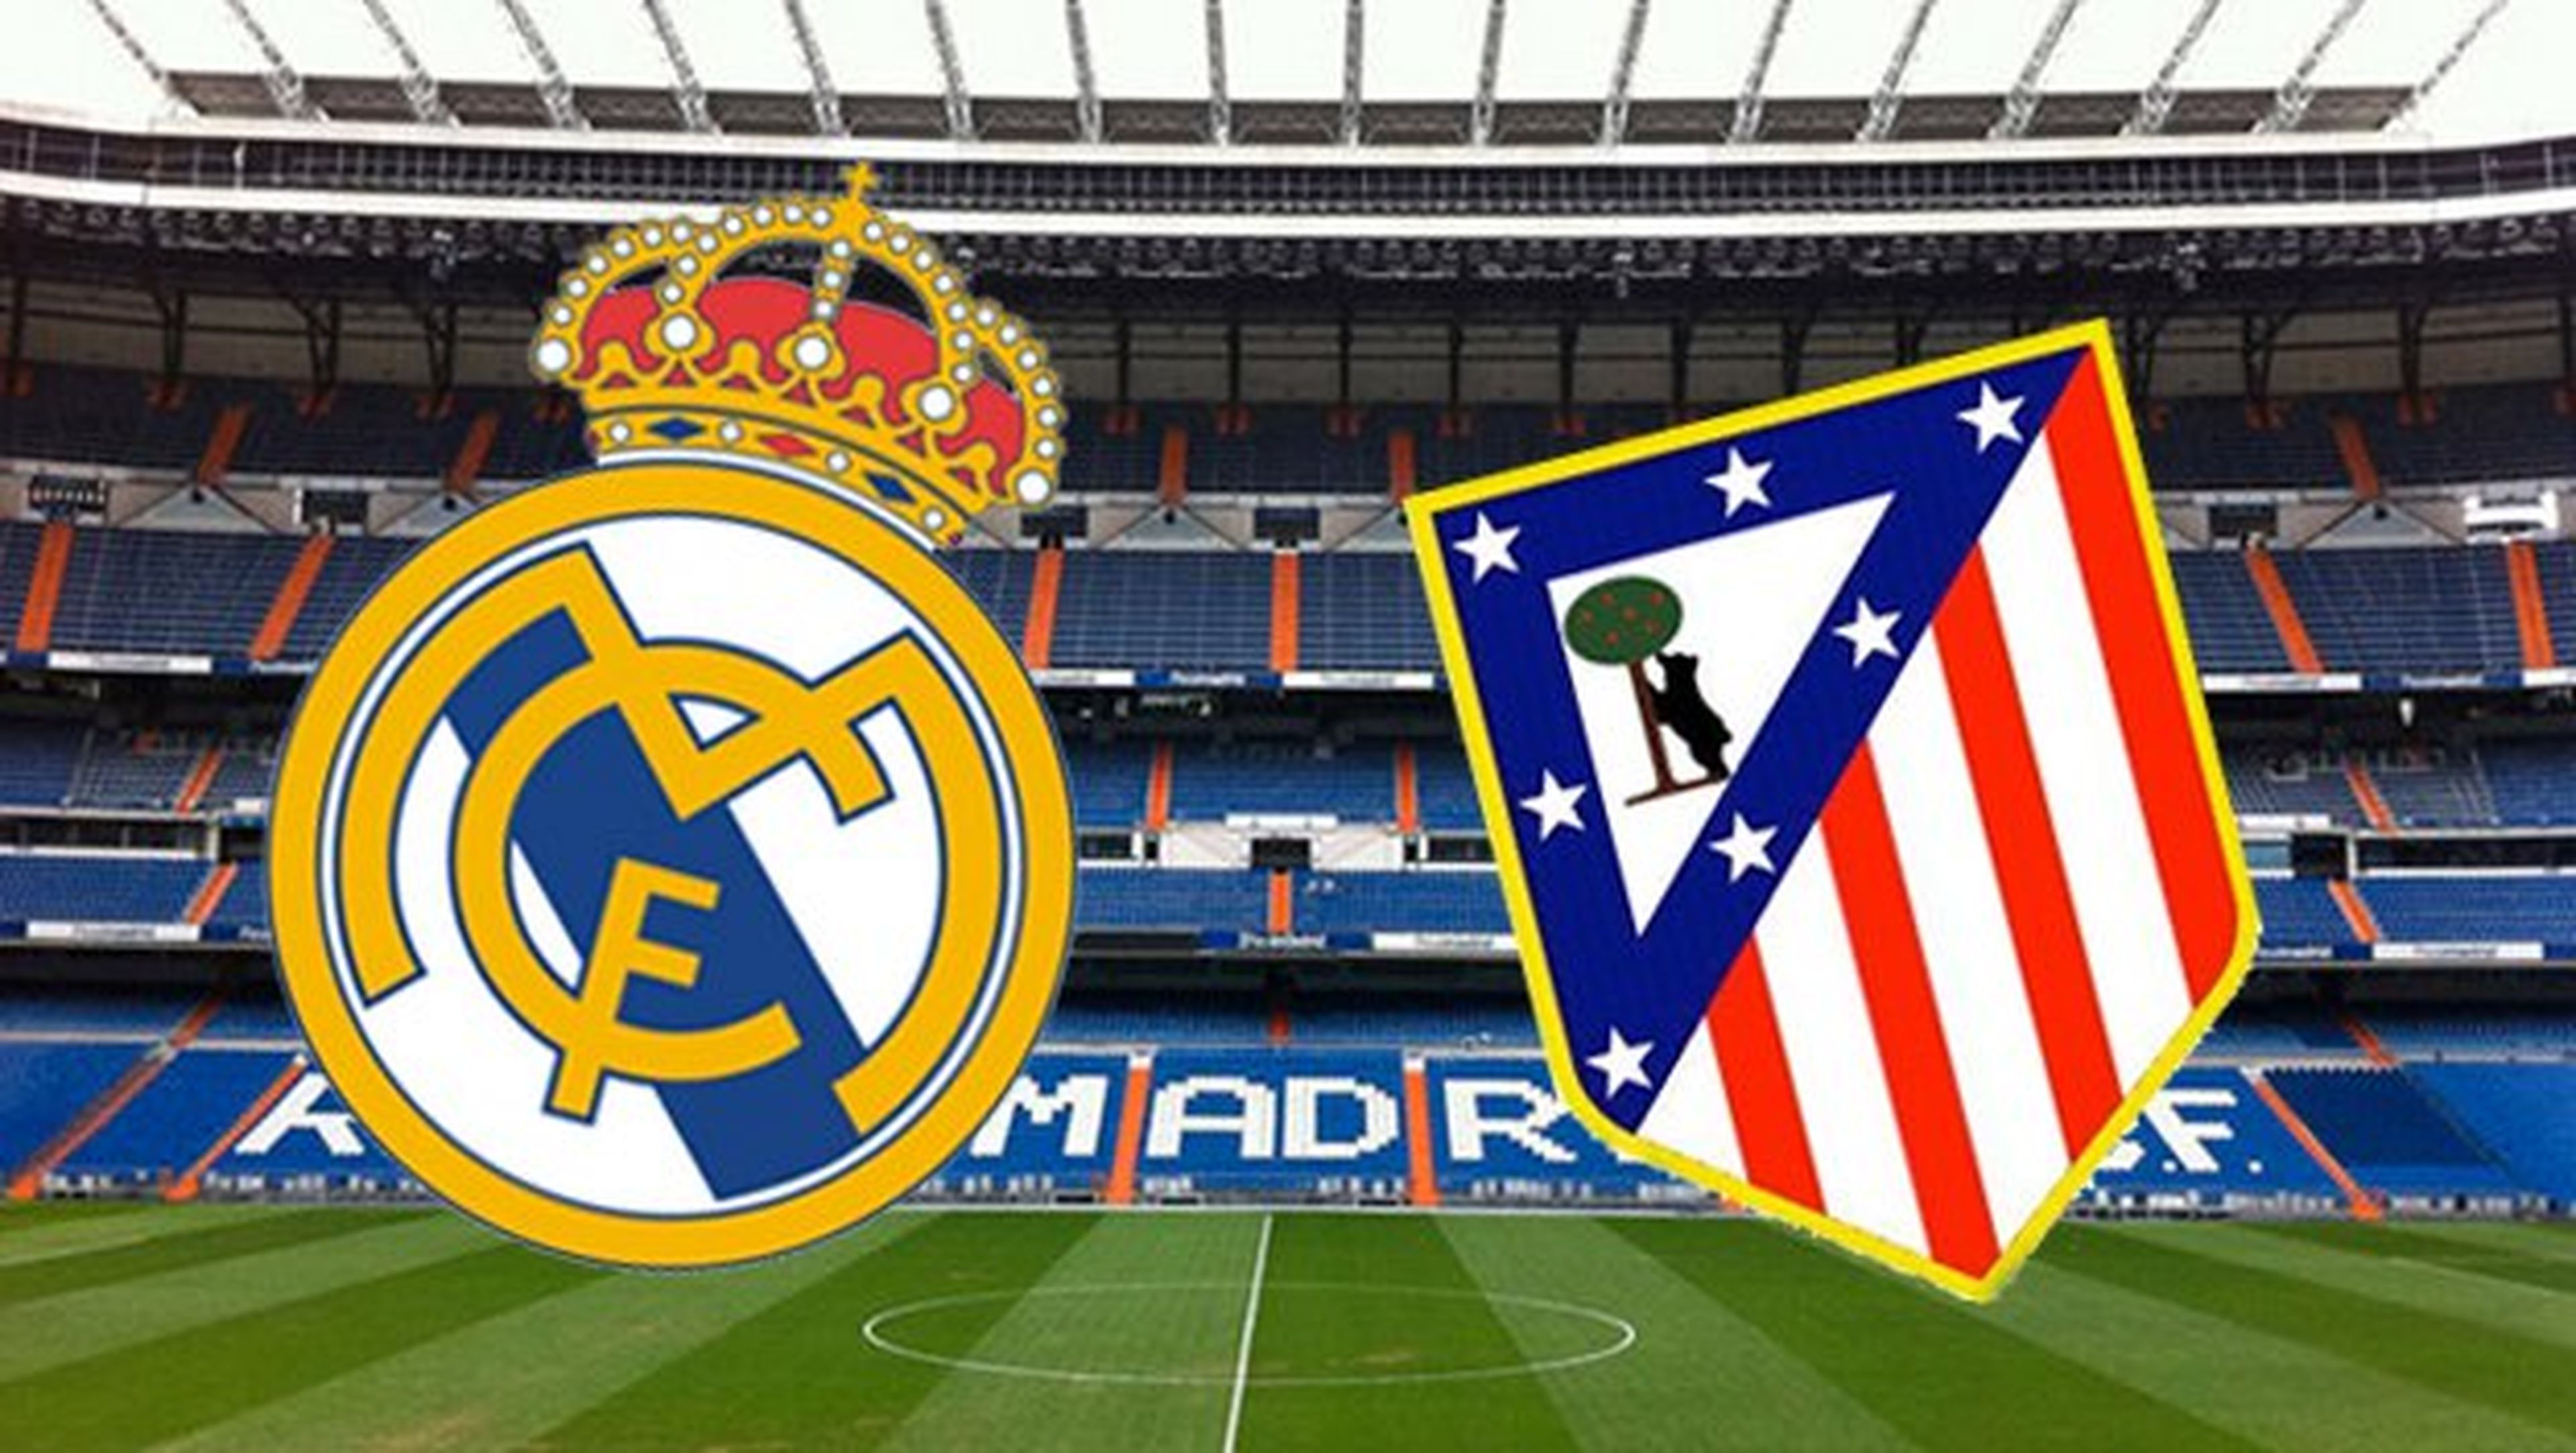 Dónde ver online Real Madrid-Atlético de Madrid en directo